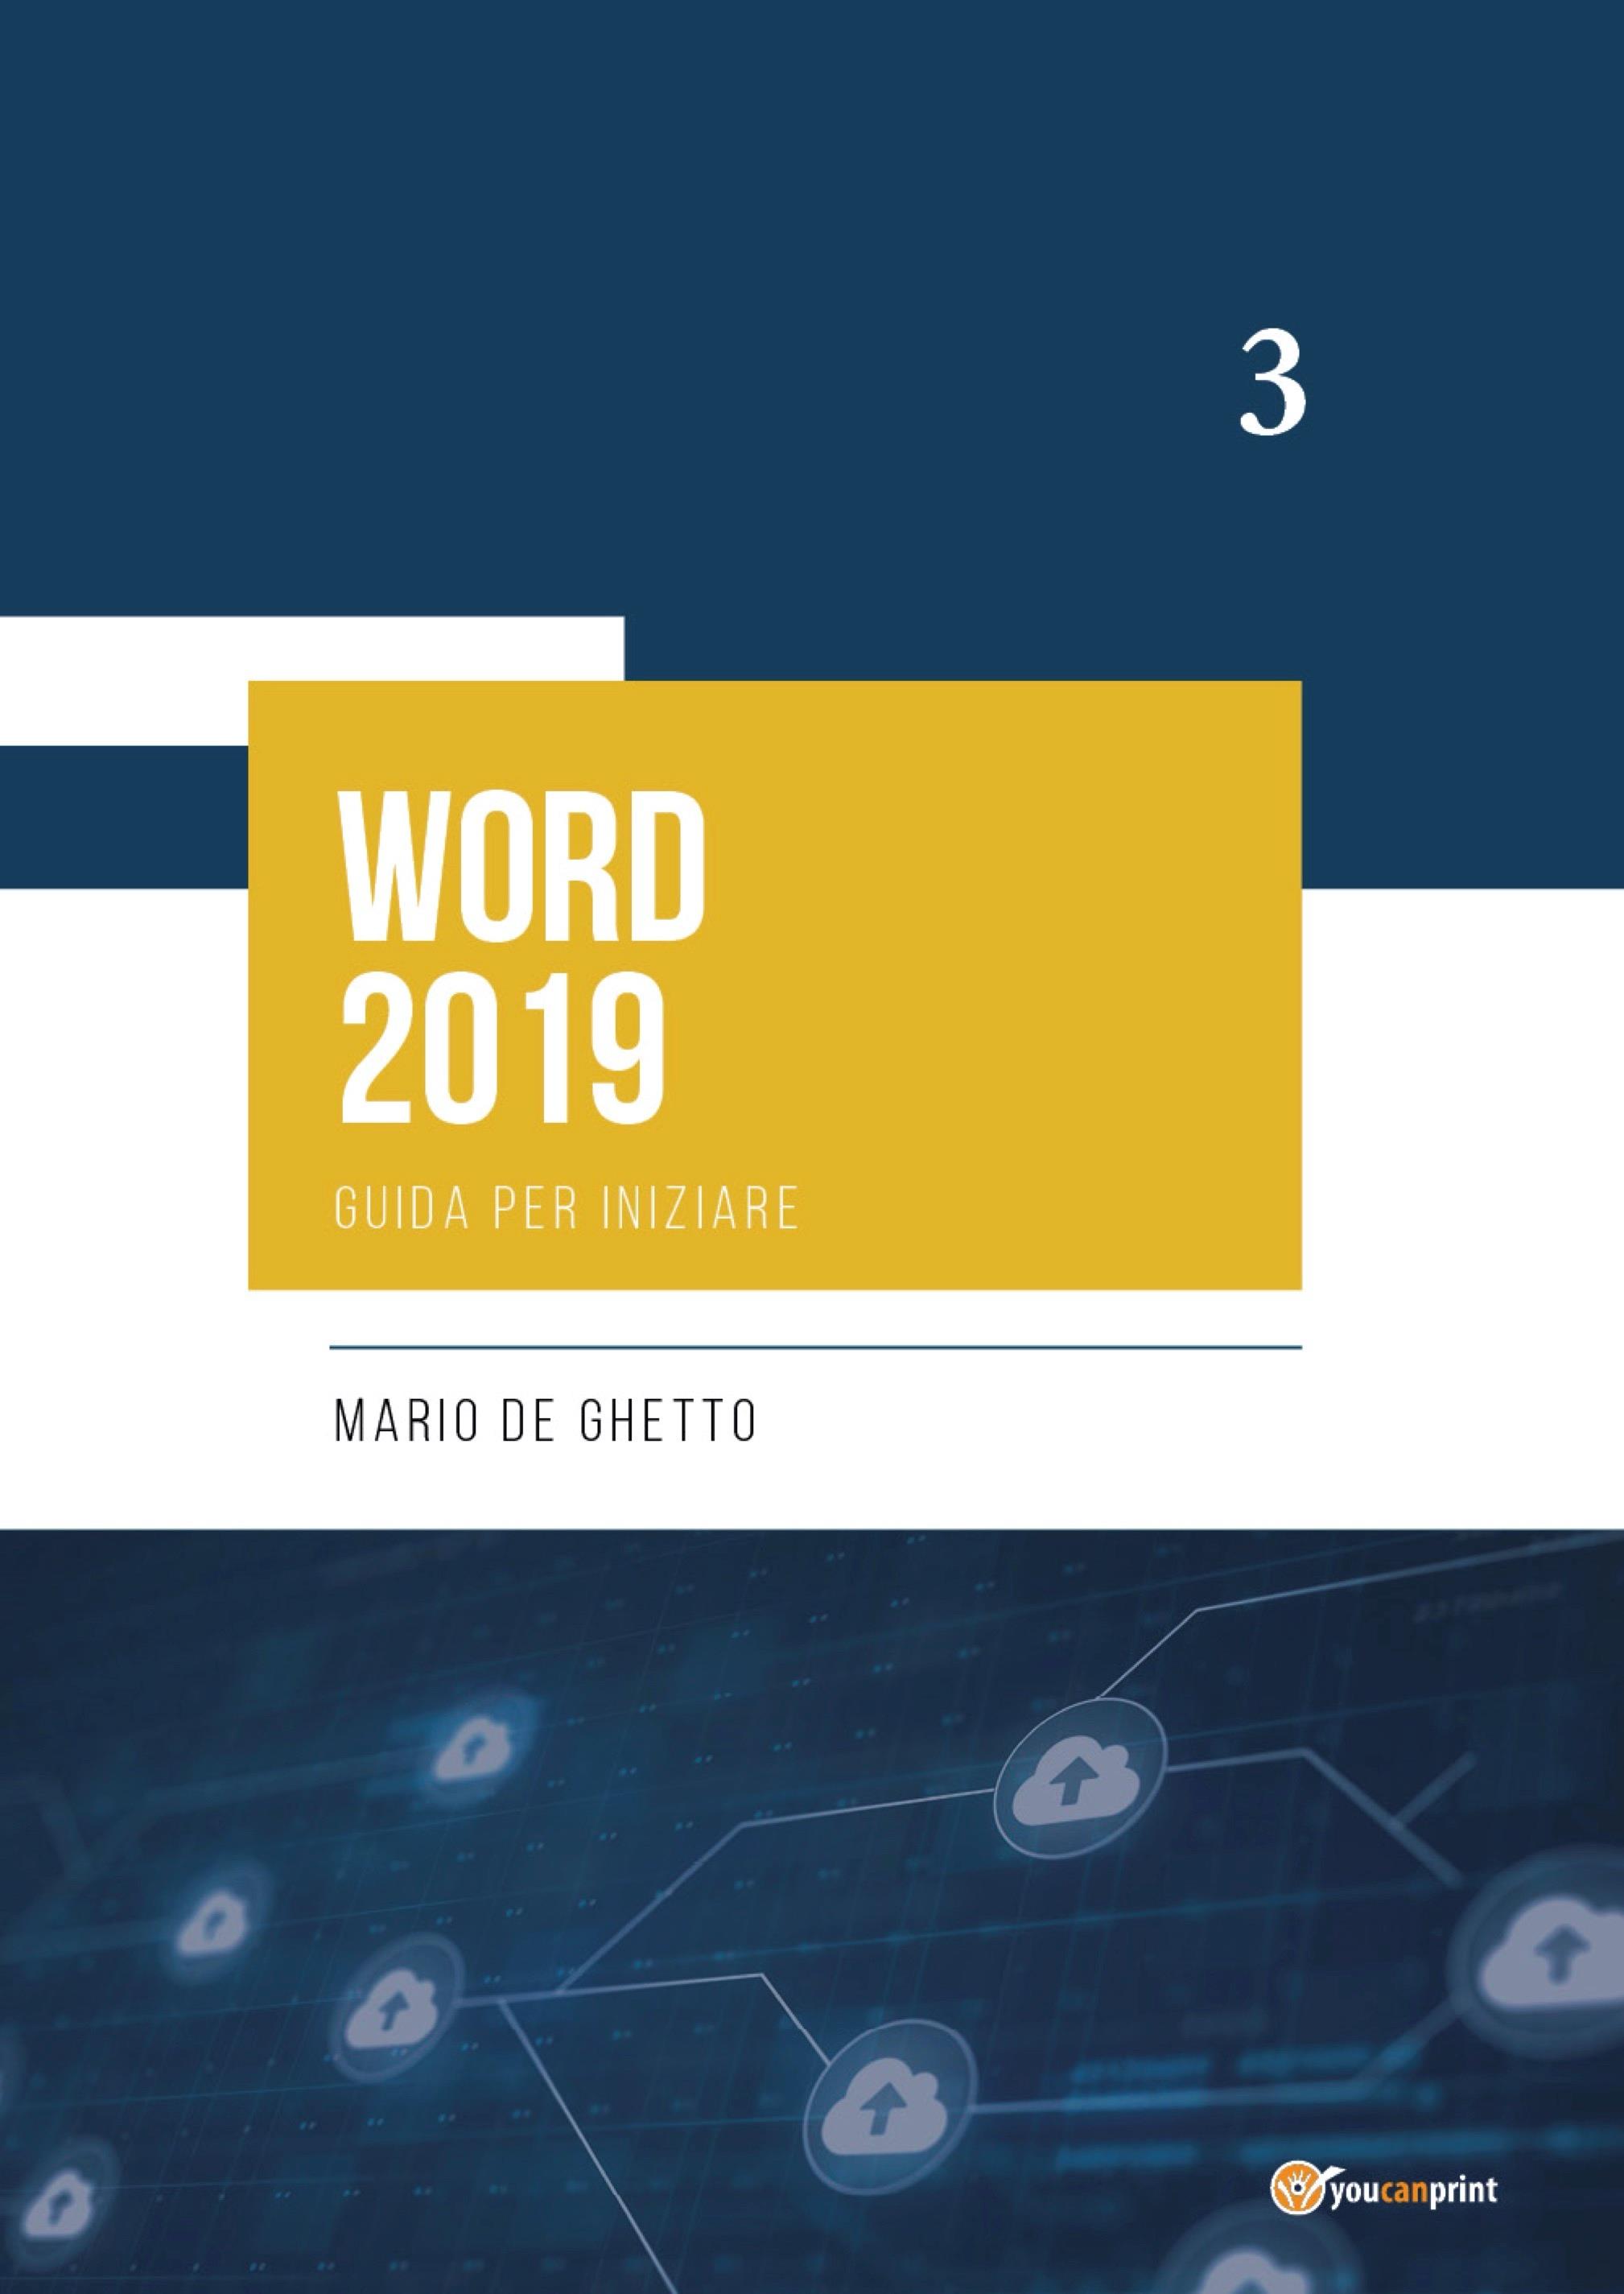 WORD 2019 - Guida per iniziare